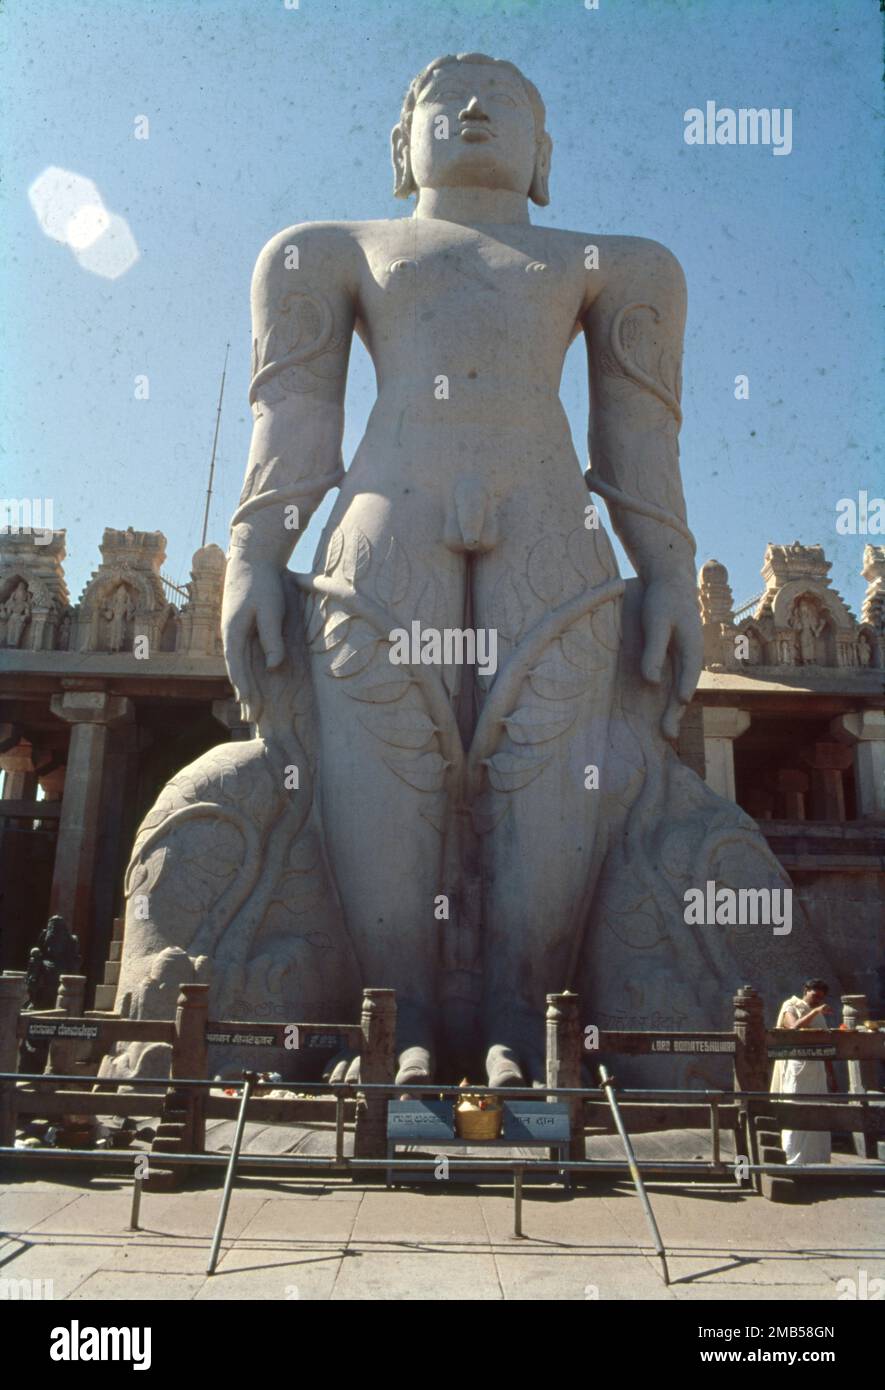 Shravanabelagola ist ein wichtiges Pilgerzentrum Jain in Karnataka. Die höchste freistehende Statue von Gomateshwara wurde aus einem einzigen Stein geschnitzt. Eine riesige, 57 m hohe Statue von Bahubali, die höchste monolithische Steinstatue der Welt, die aus einem einzigen Granitblock geschnitzt wurde. Stockfoto